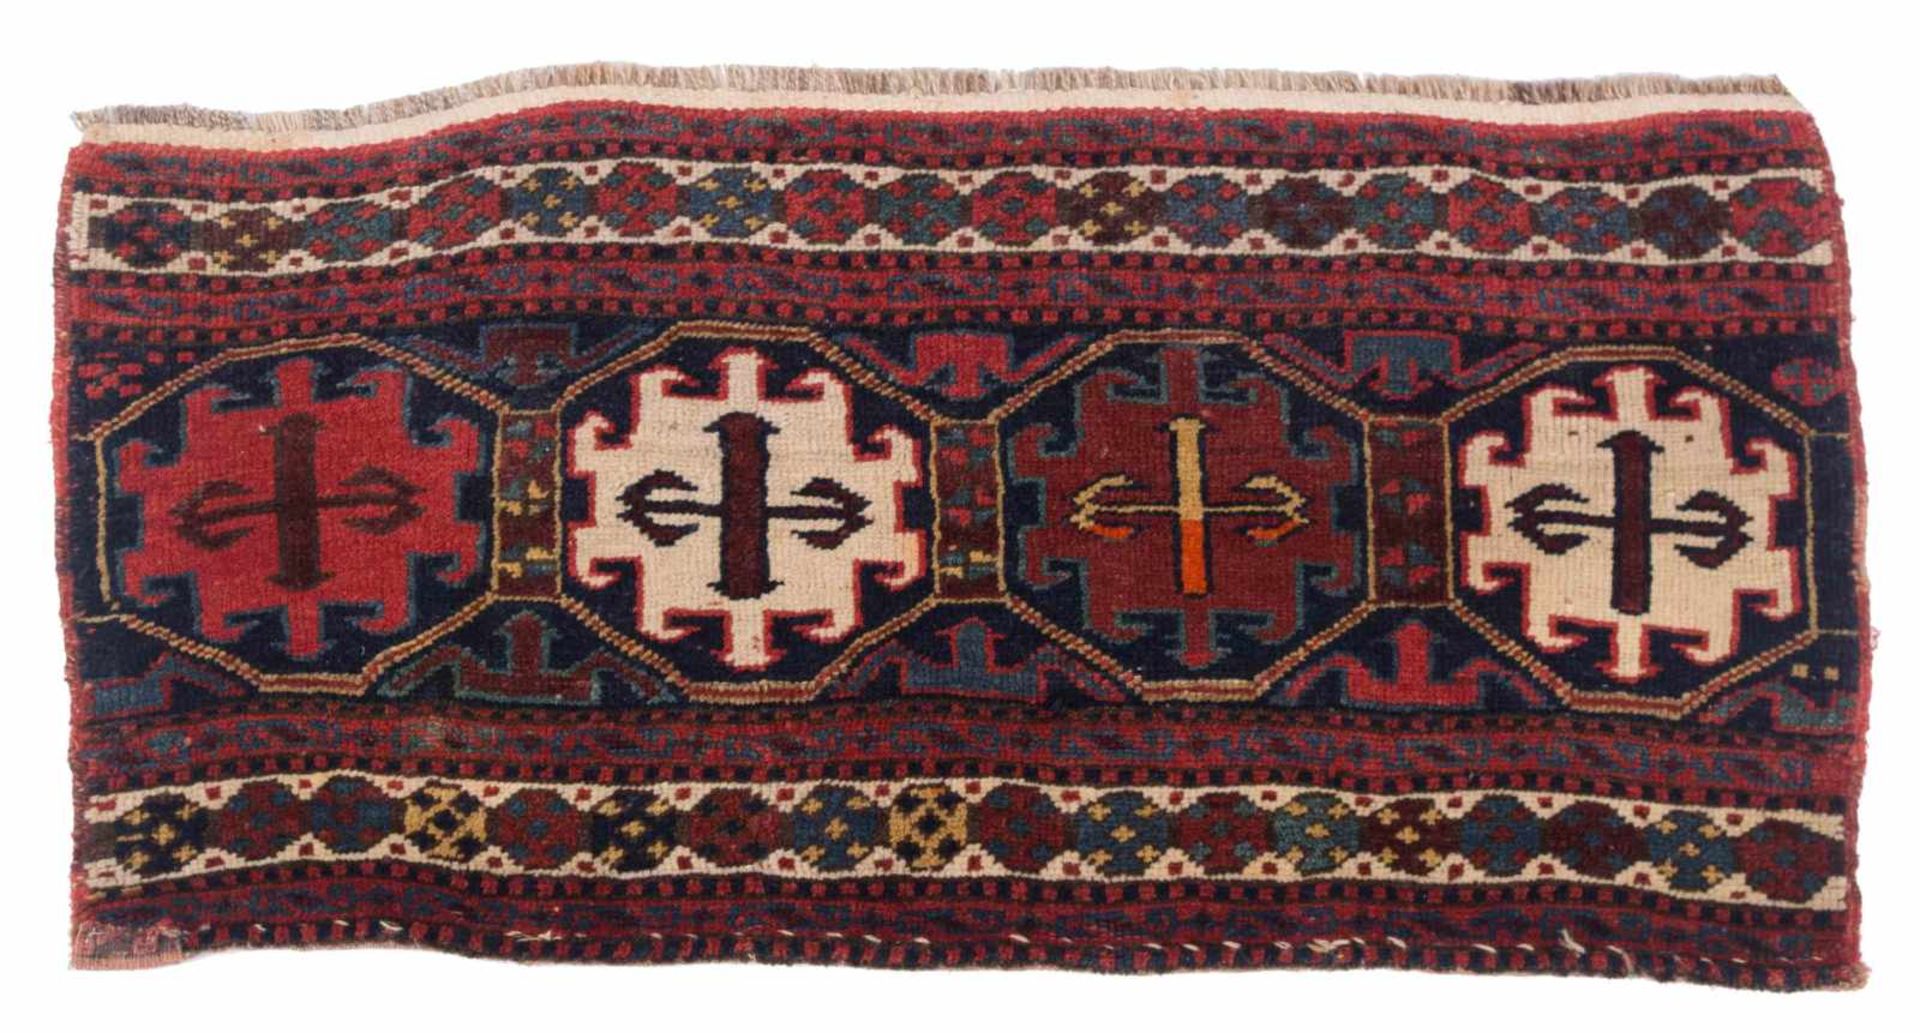 altes Orientalisches Teppichfragmenthandgeknüpft, Maße: 91 cm x 44 cm,small old oriental